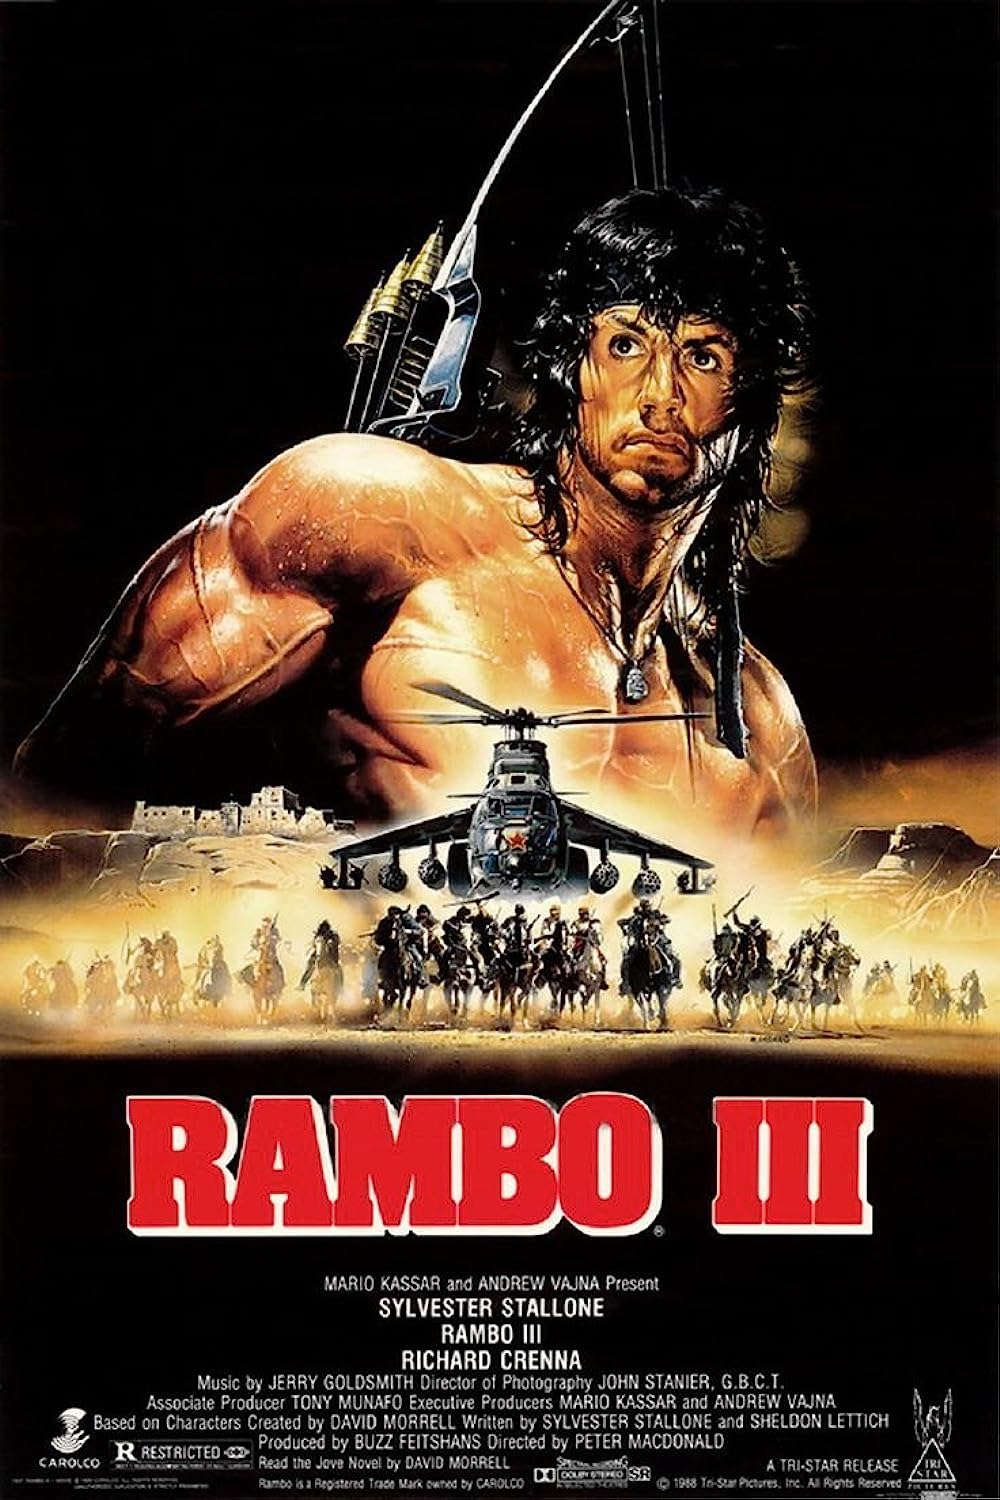 FULL MOVIE: Rambo III (1988)